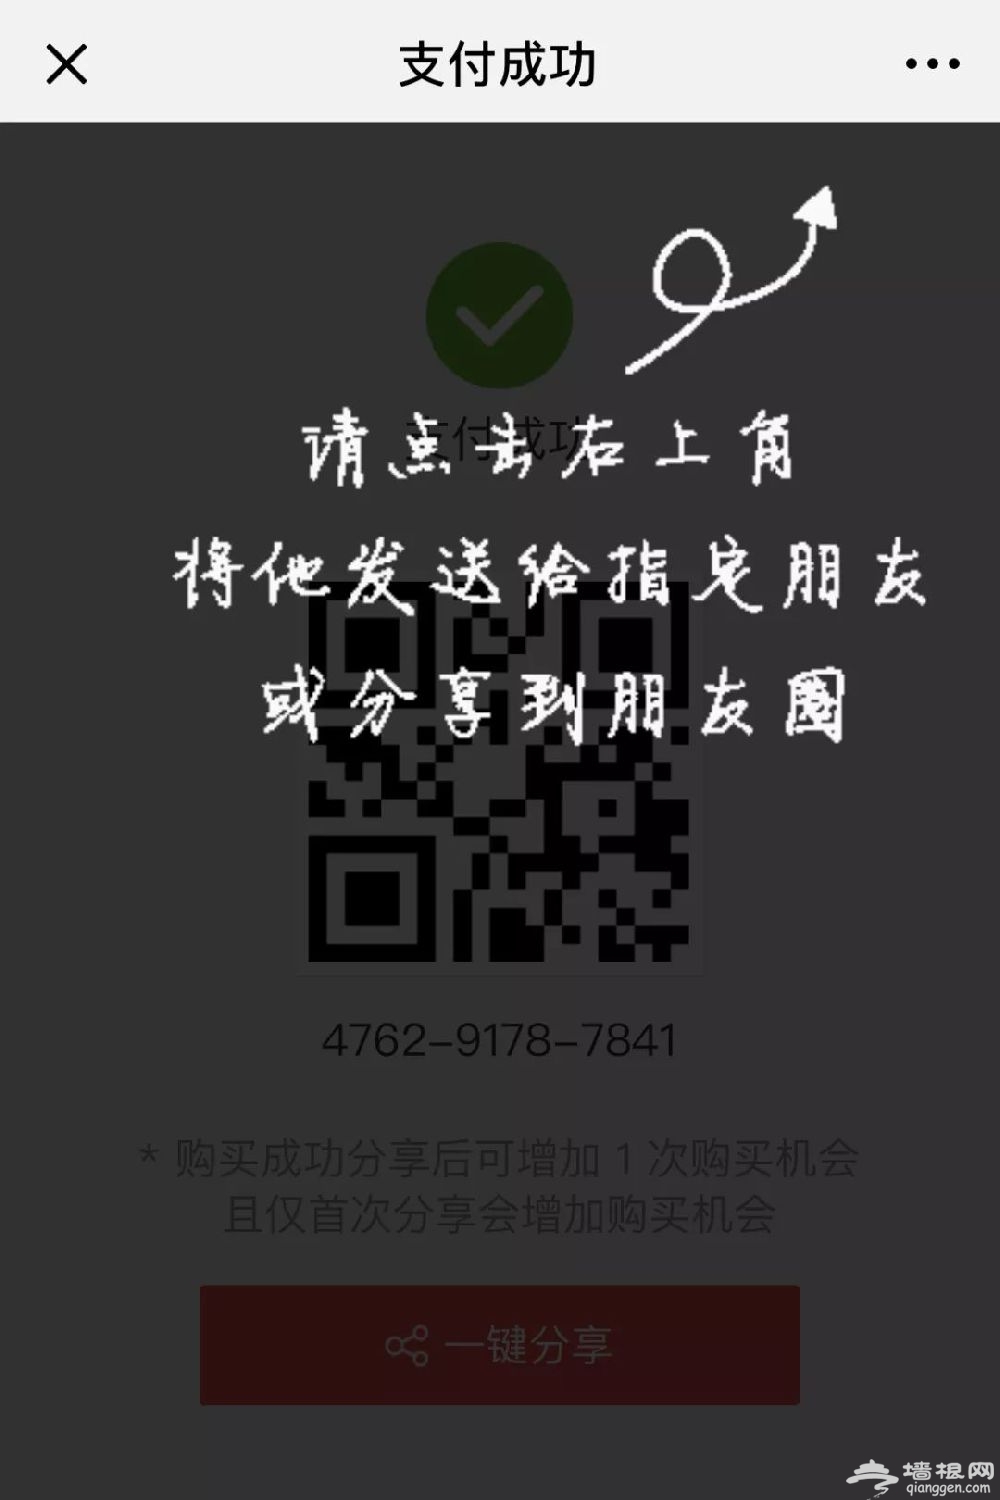 2019北京昌平惠民雪票(时间 优惠 抢购攻略)